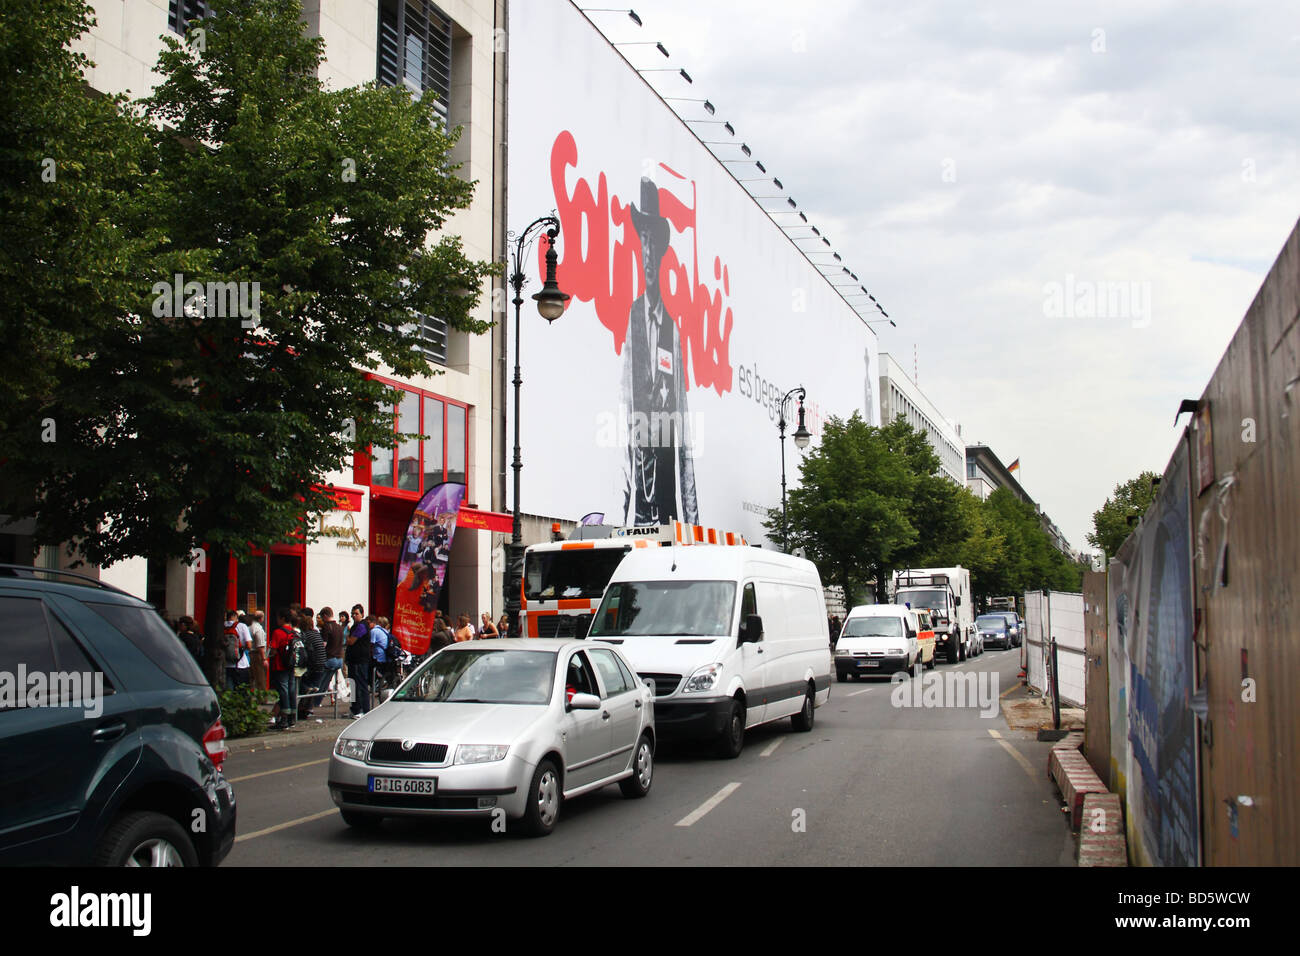 Commemorative 'solidarietà' billboard in Berlino Foto Stock